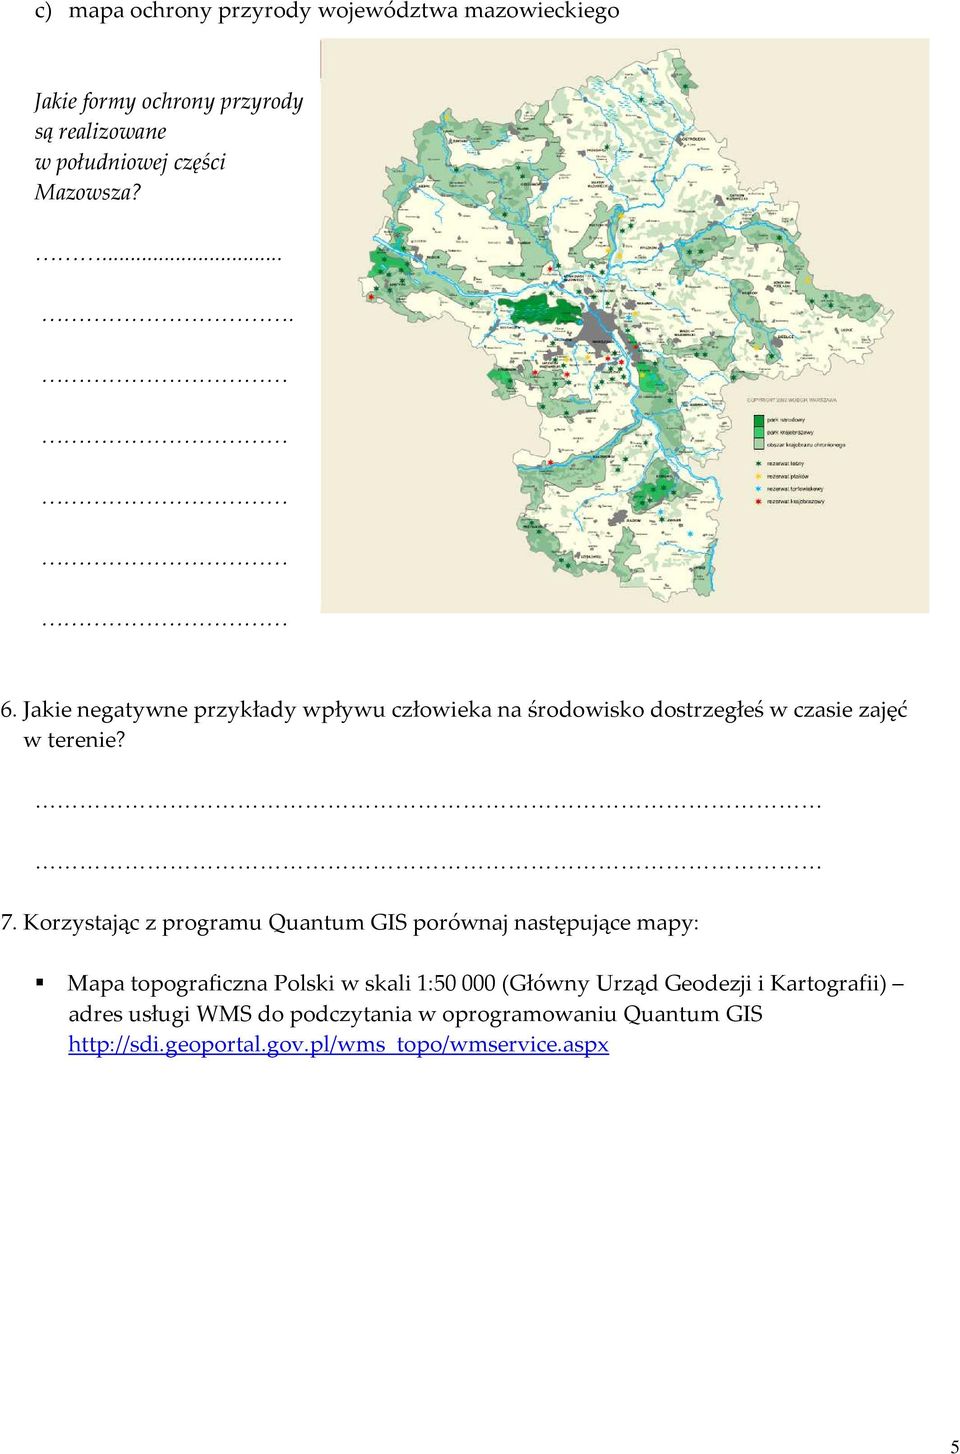 Korzystając z programu Quantum GIS porównaj następujące mapy: Mapa topograficzna Polski w skali 1:50 000 (Główny Urząd